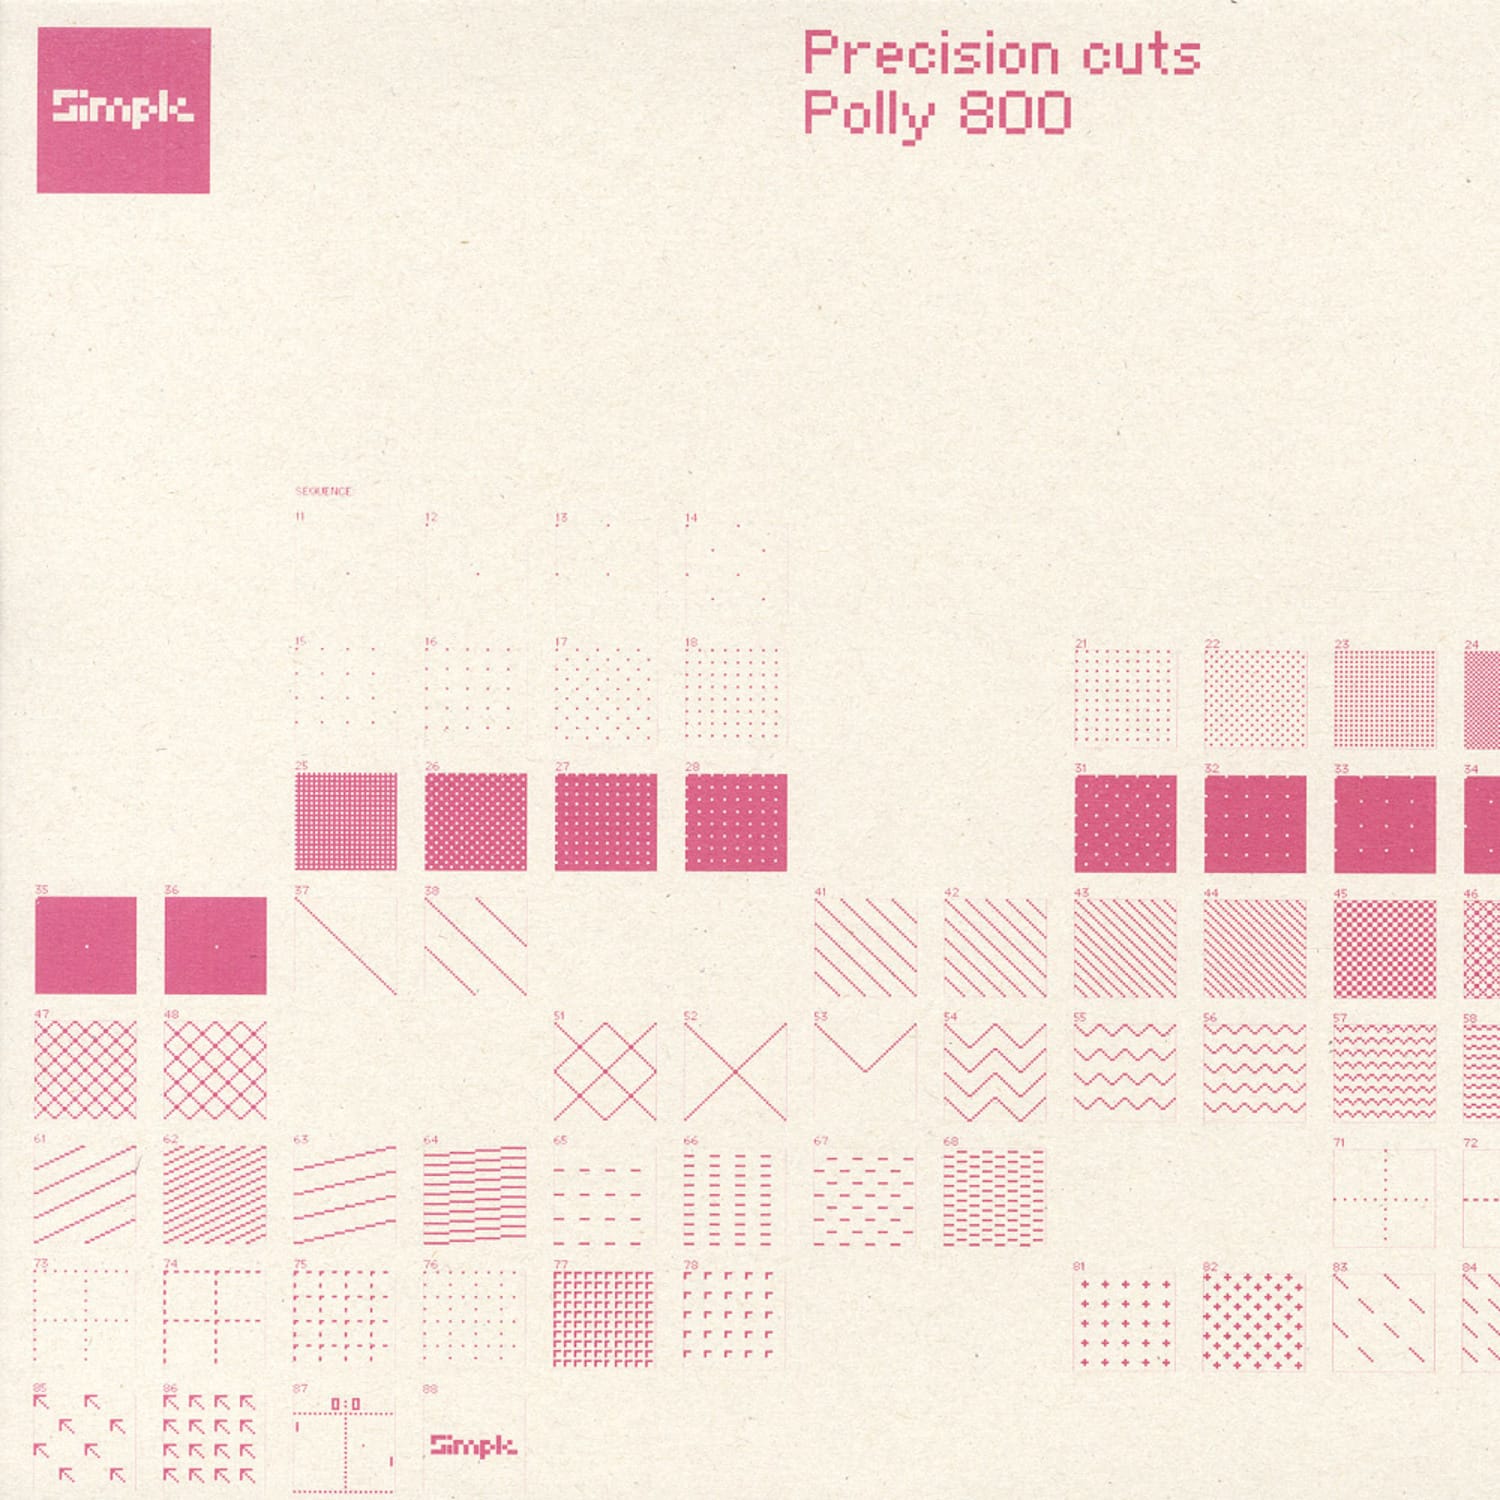 Precision Cuts - POLLY 800